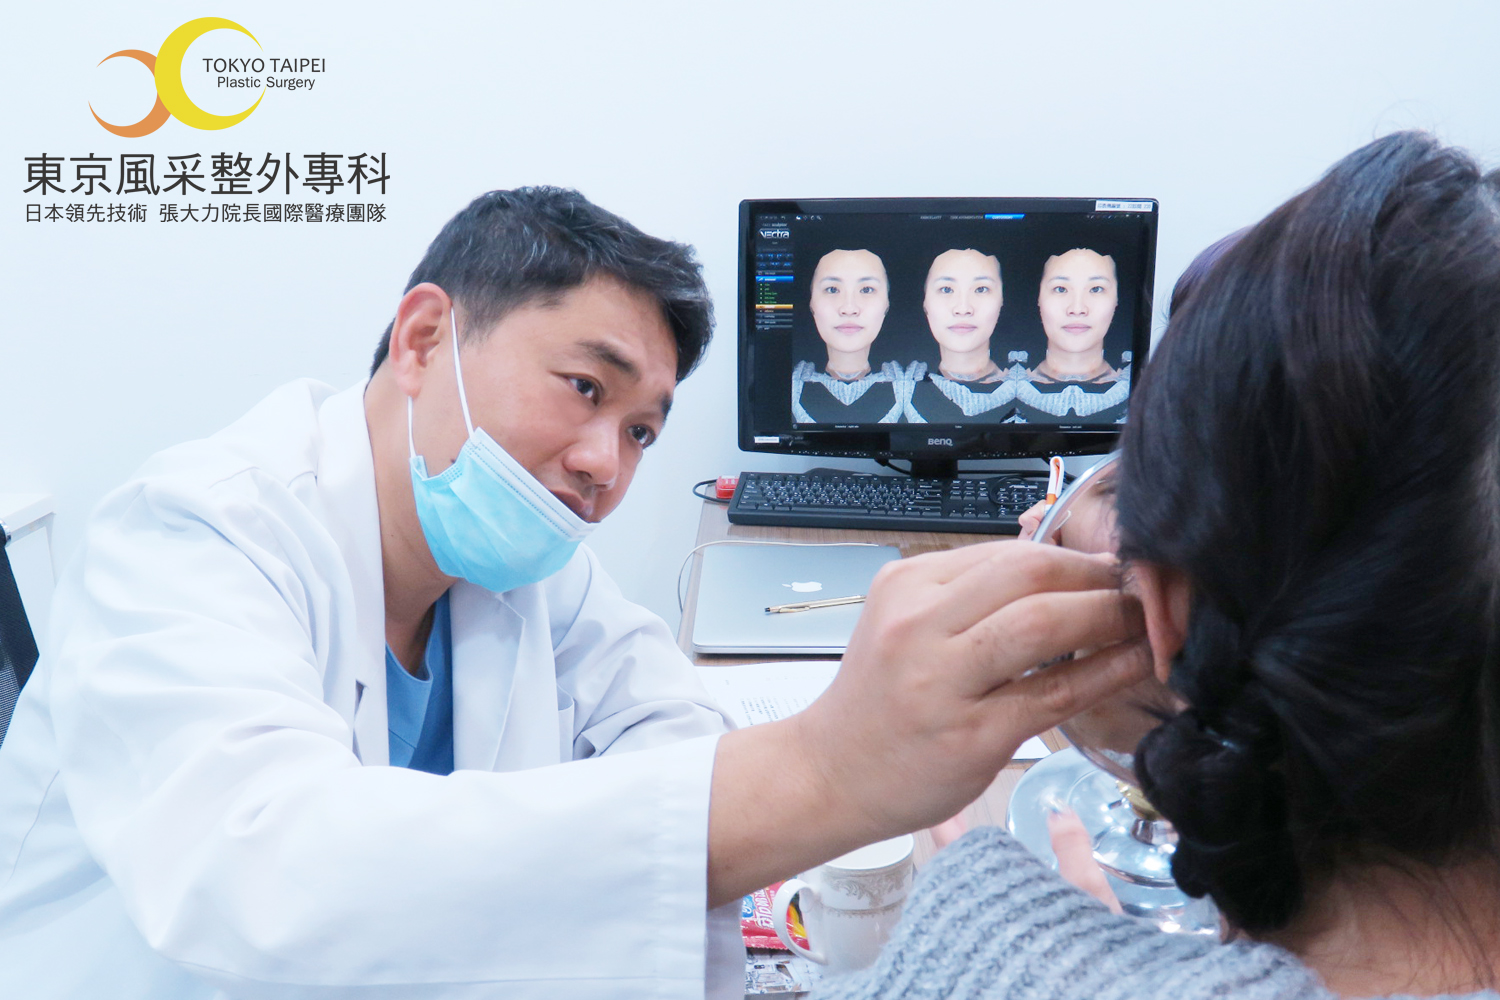 張大力醫師雙眼皮手術前測量-東京風采整形外科診所